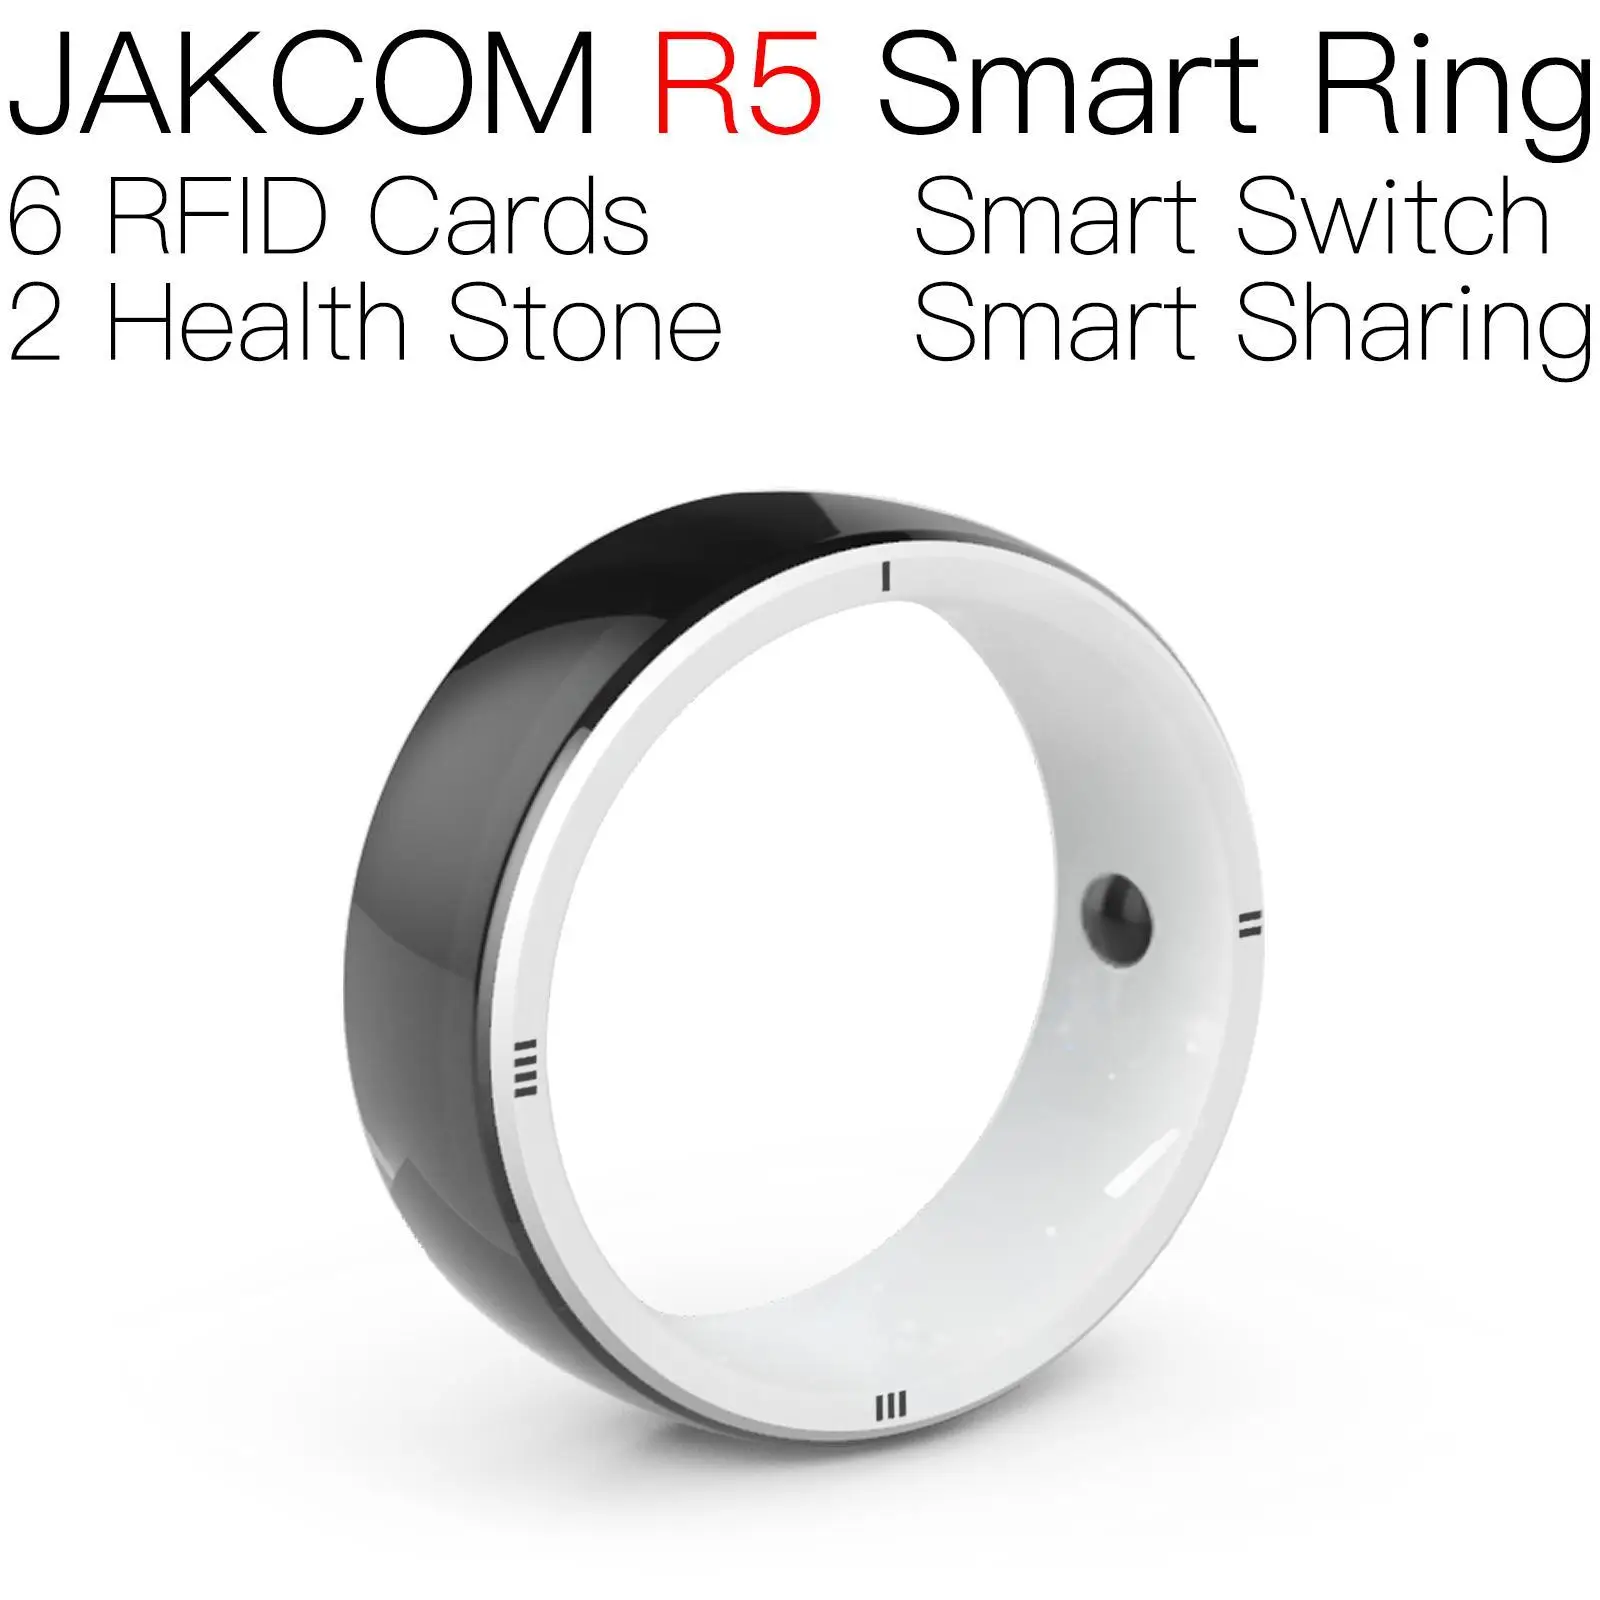 

Умное кольцо JAKCOM R5, новый продукт, как умные часы для мужчин cx 10 plus, с камерой, рчид, собака, мини-фотография, наклейка, умная метка, длинная